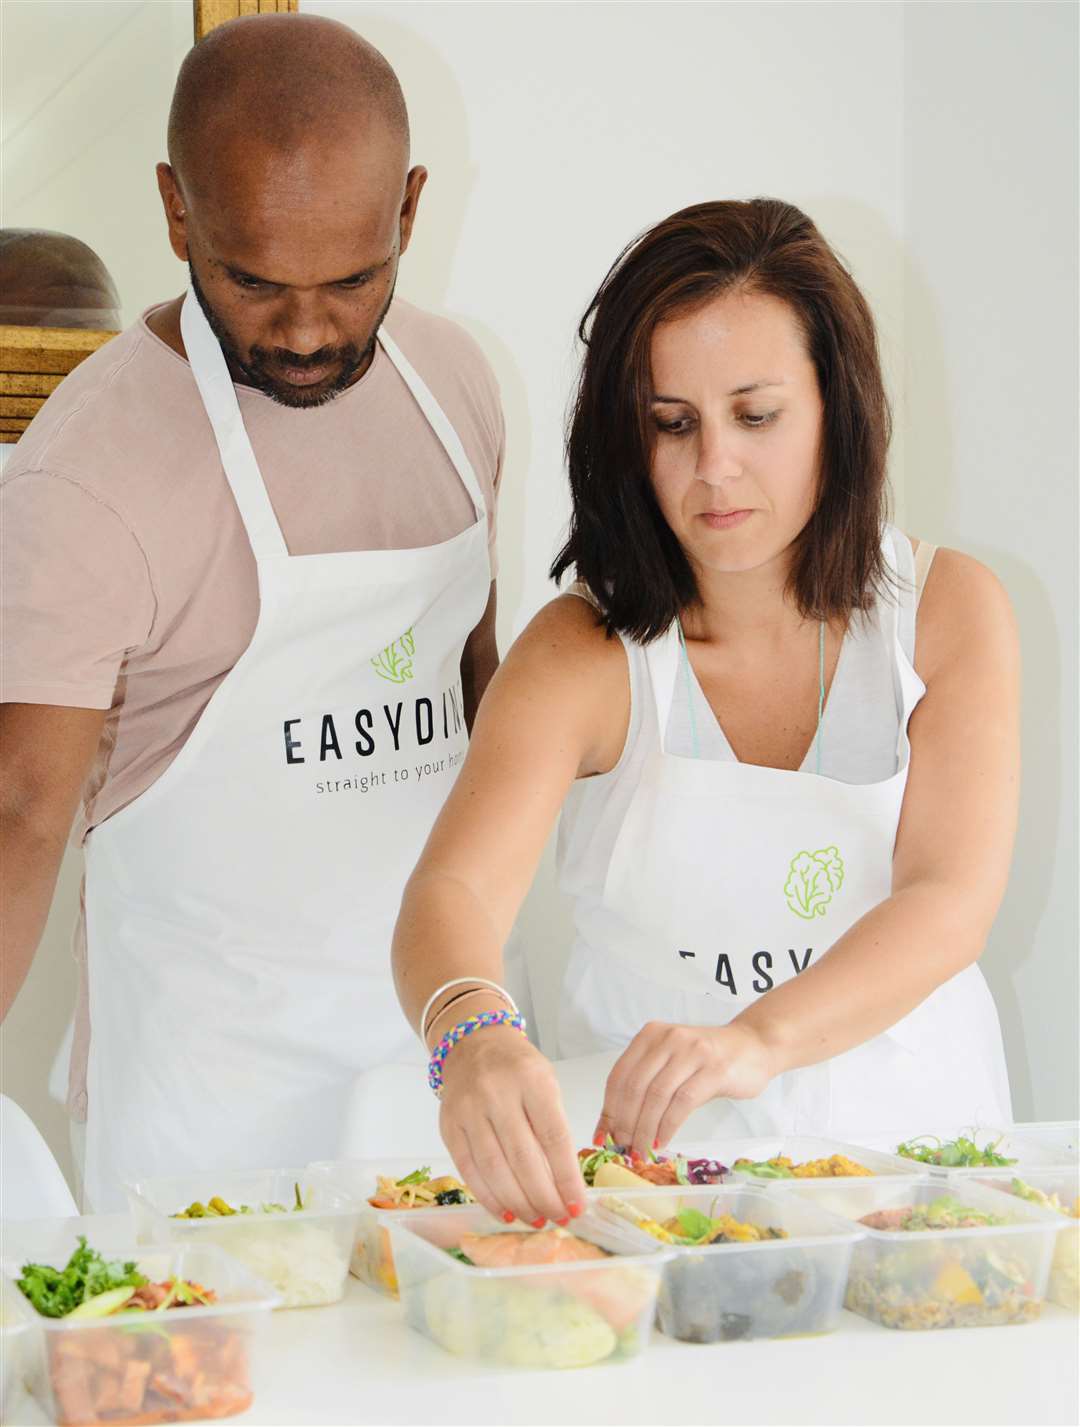 The Easy Dine team: Sadith Fernando and Seila Merino